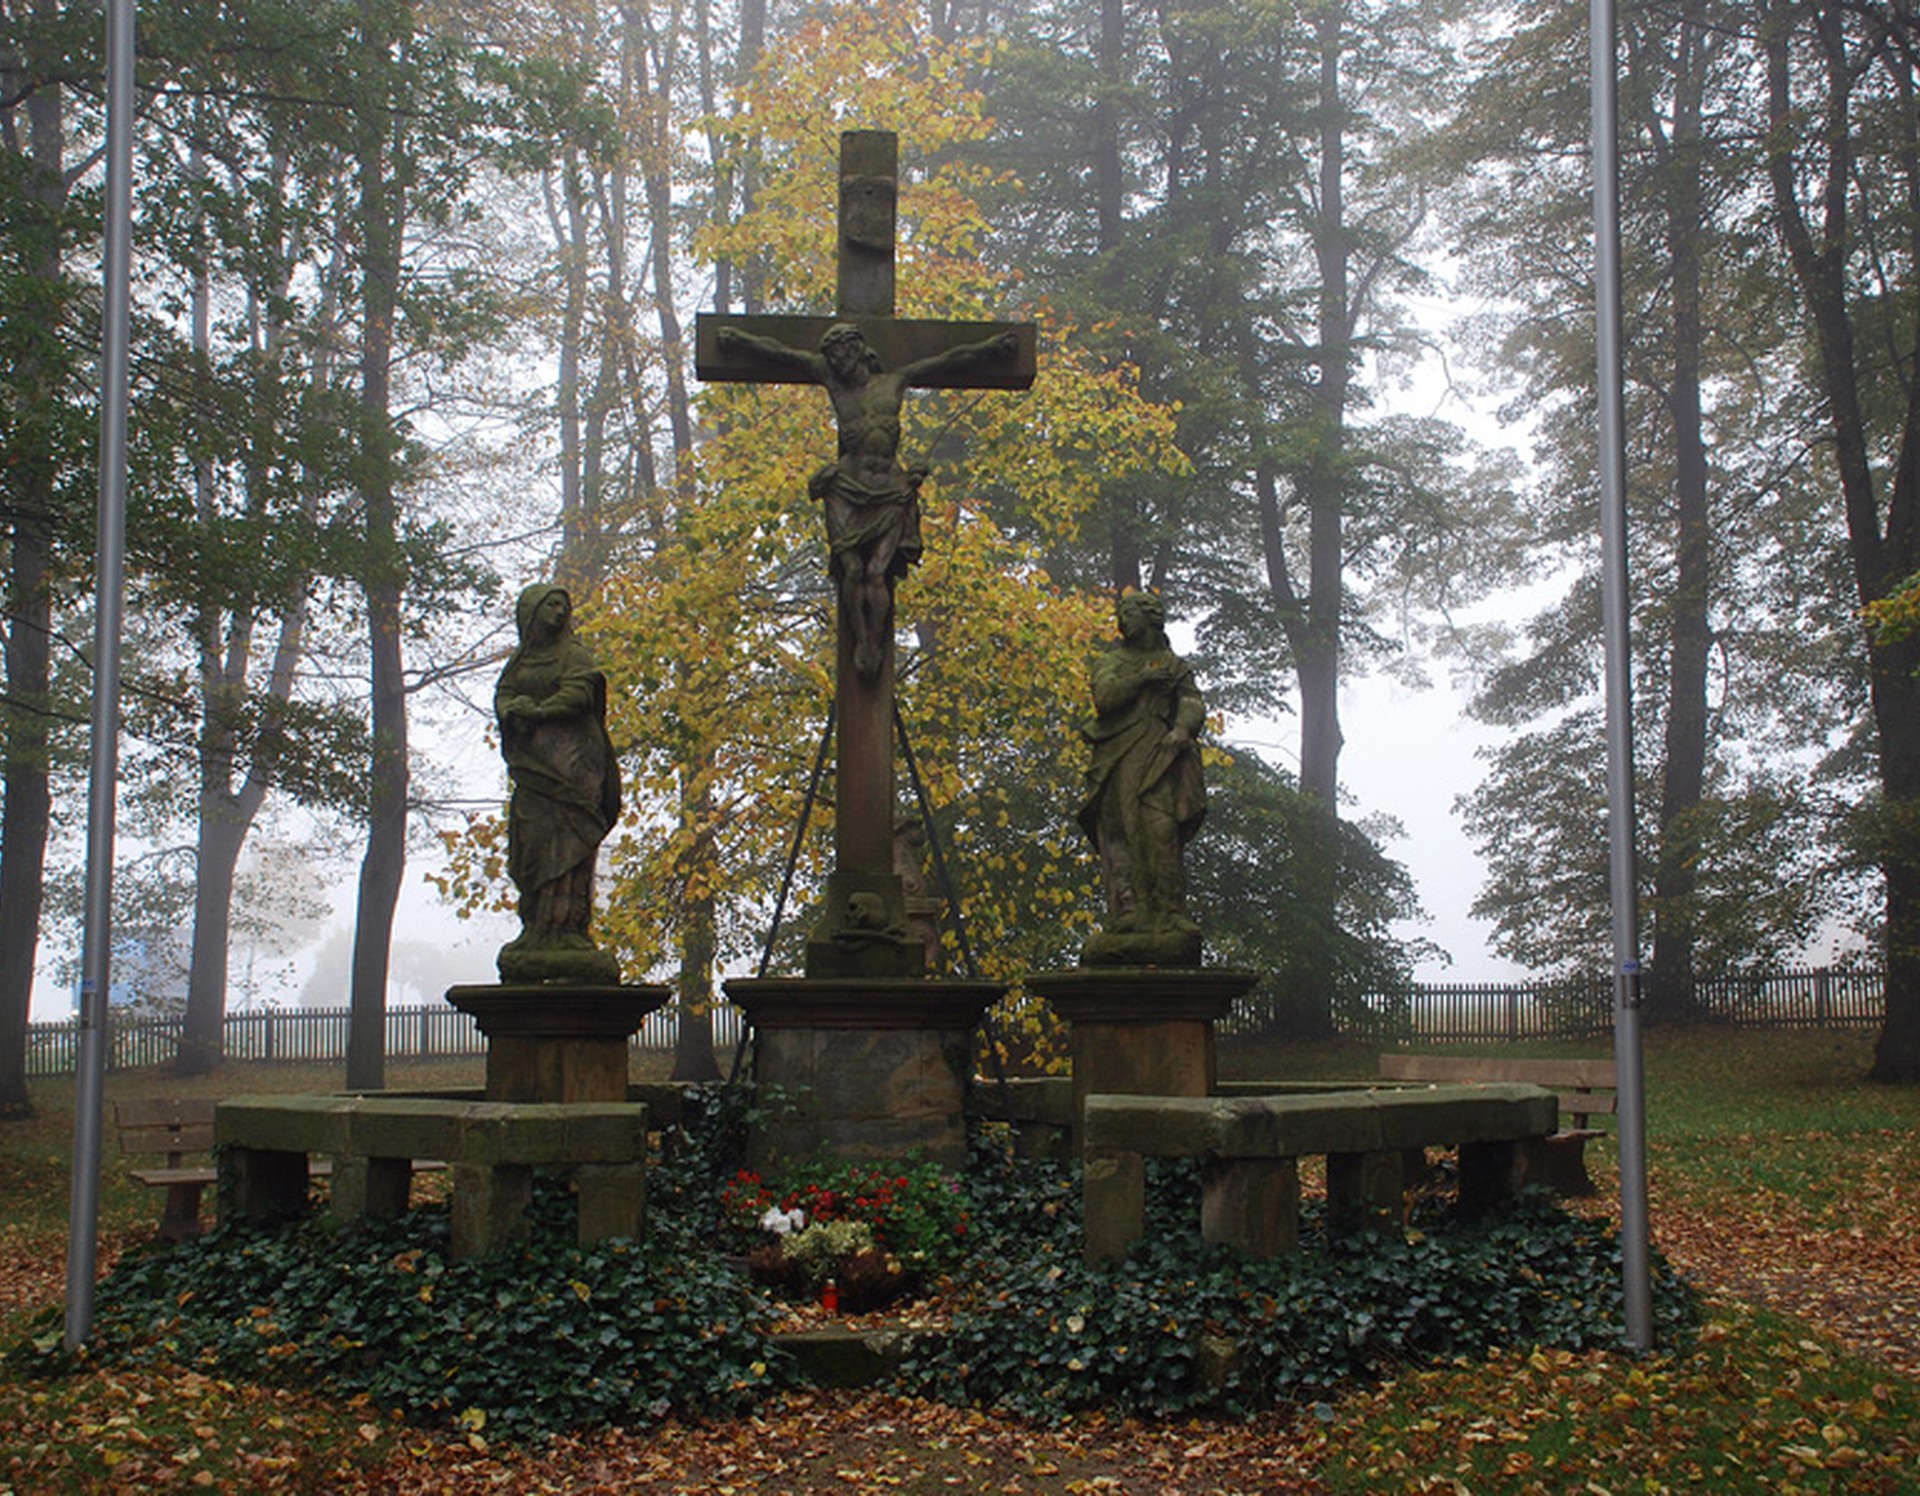 Hohes Kreuz am Kreuzweg in Kleinenberg. Seitlich des Kruzifixes befinden sich zwei Figuren.